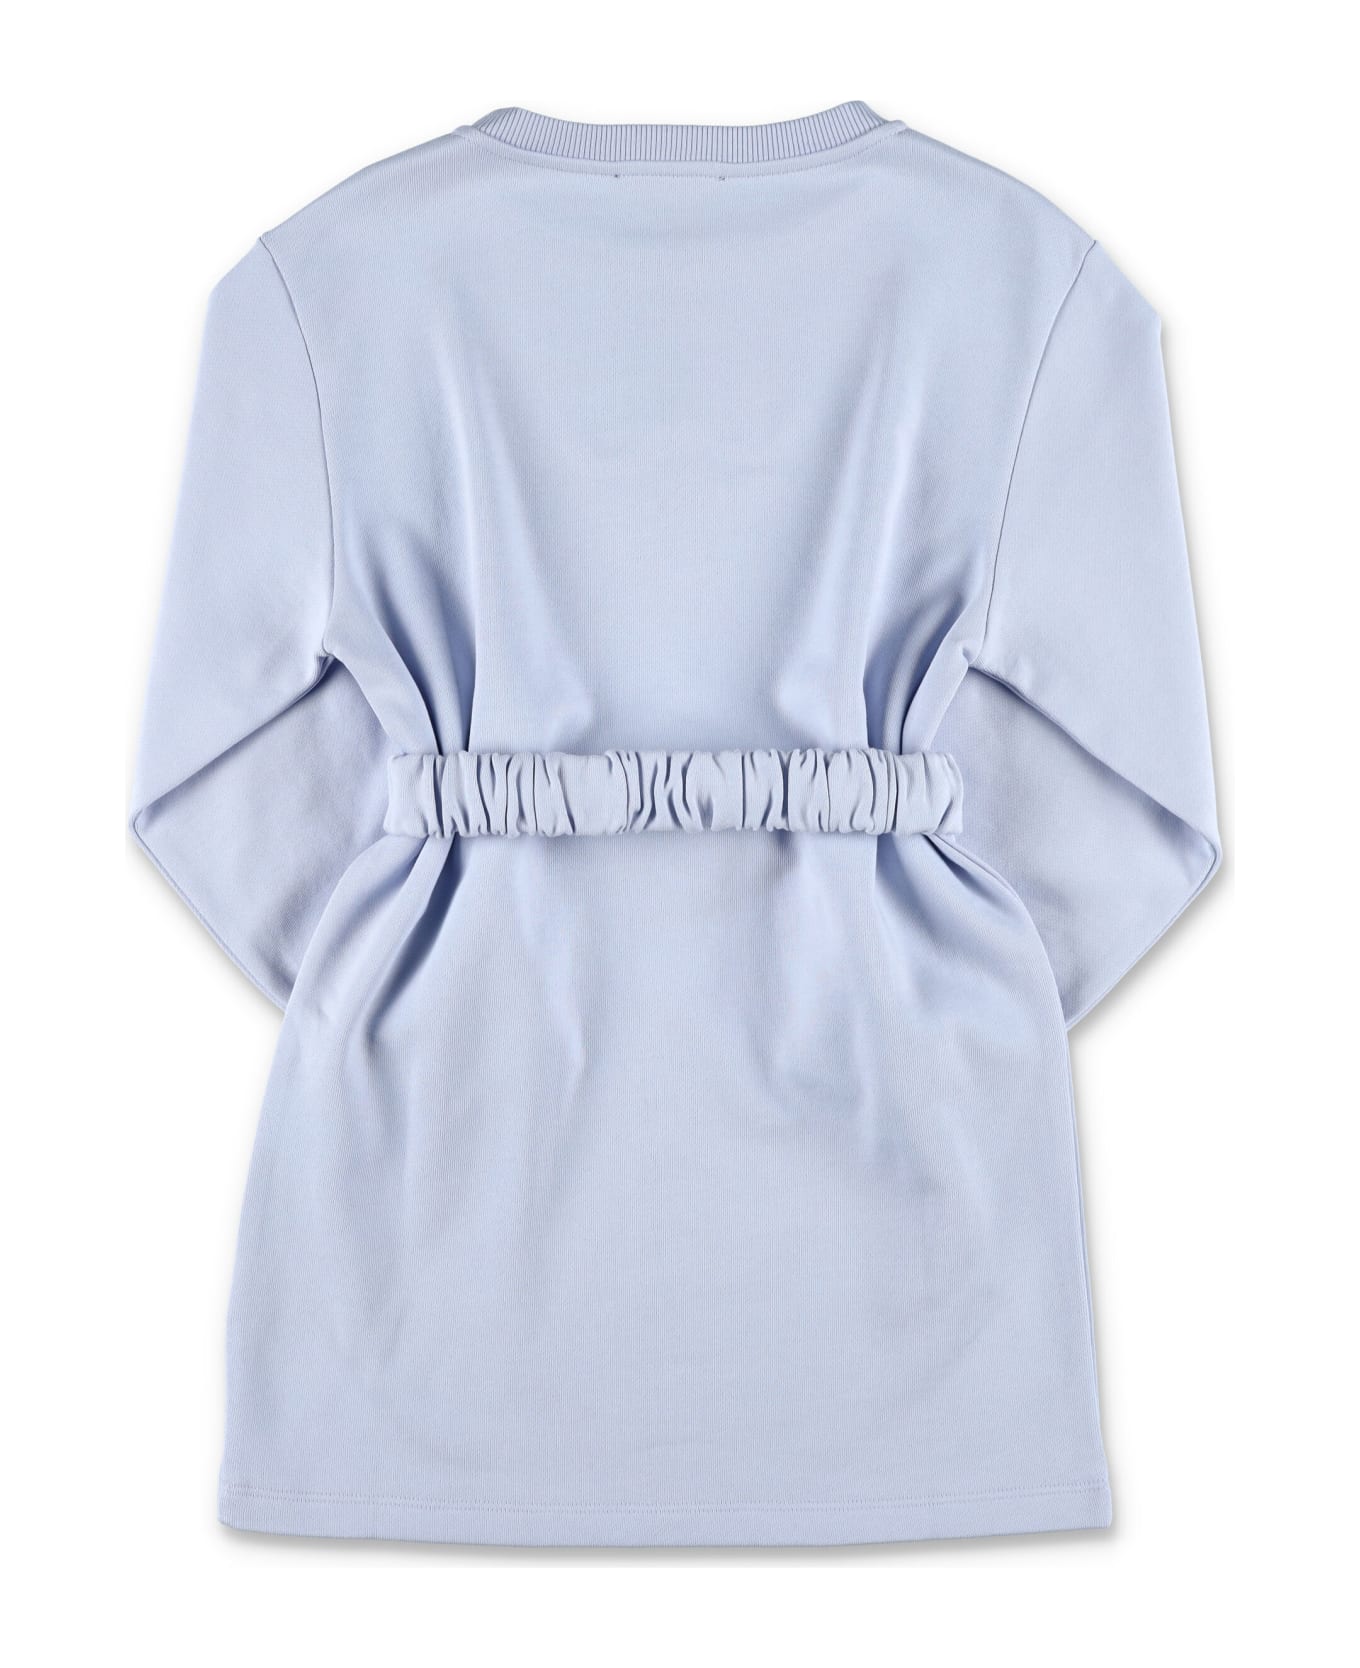 Balmain Cotton Dress With Belt - LIGHT BLUE